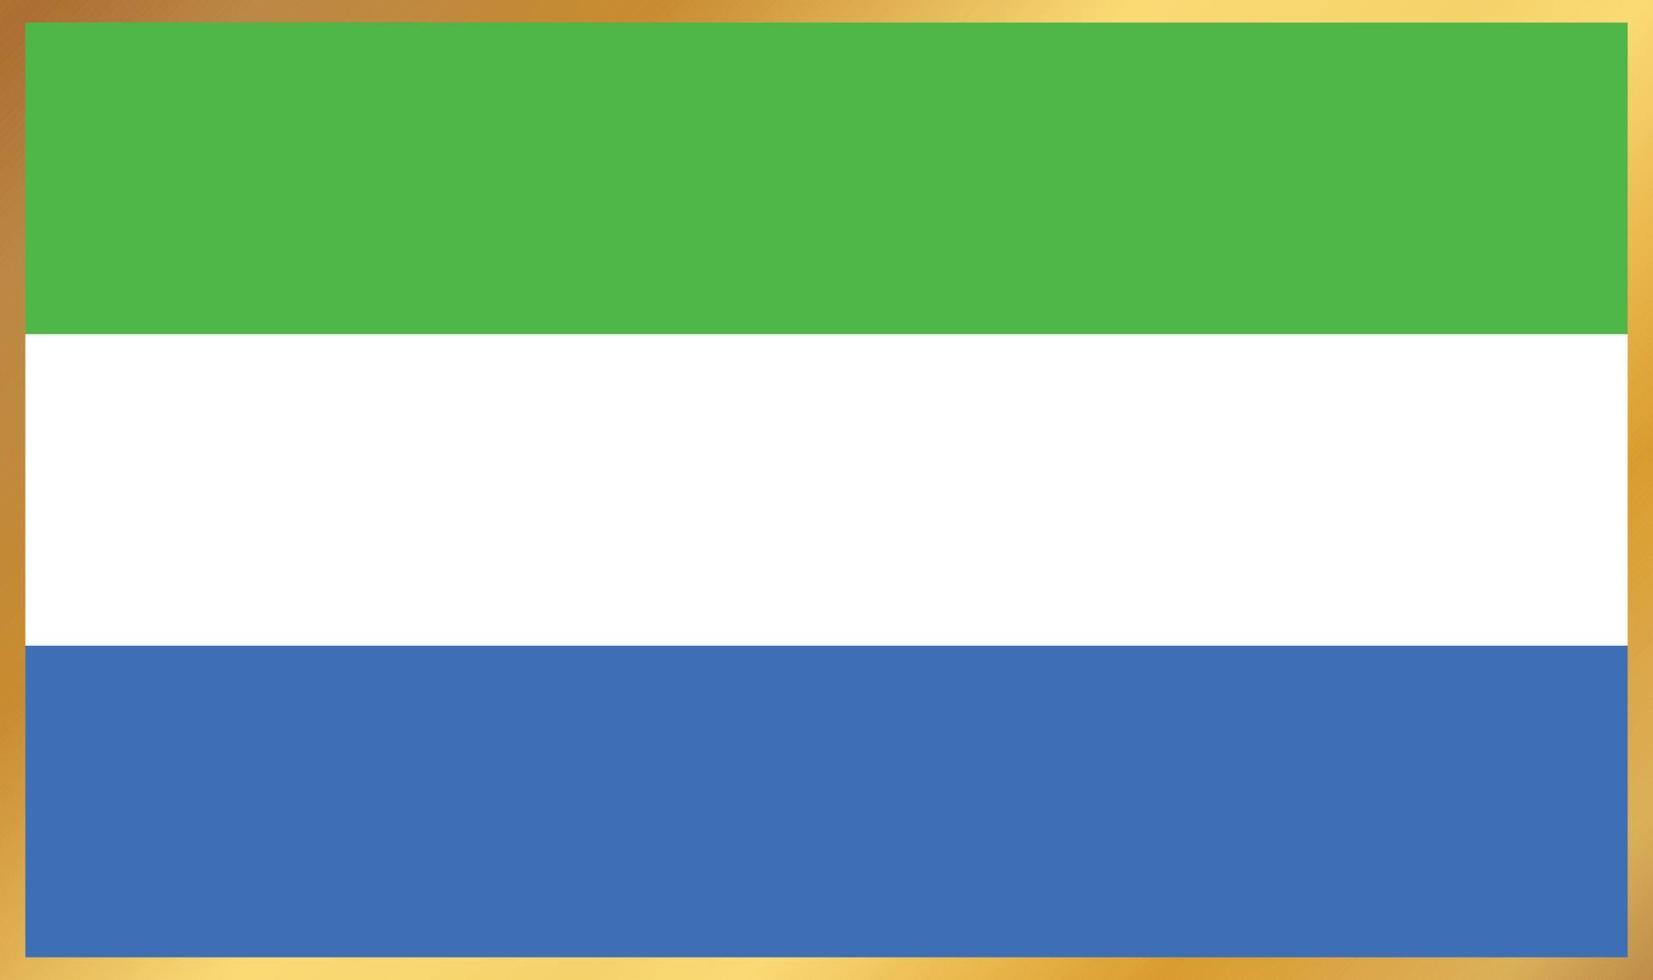 bandiera della sierra leone, illustrazione vettoriale